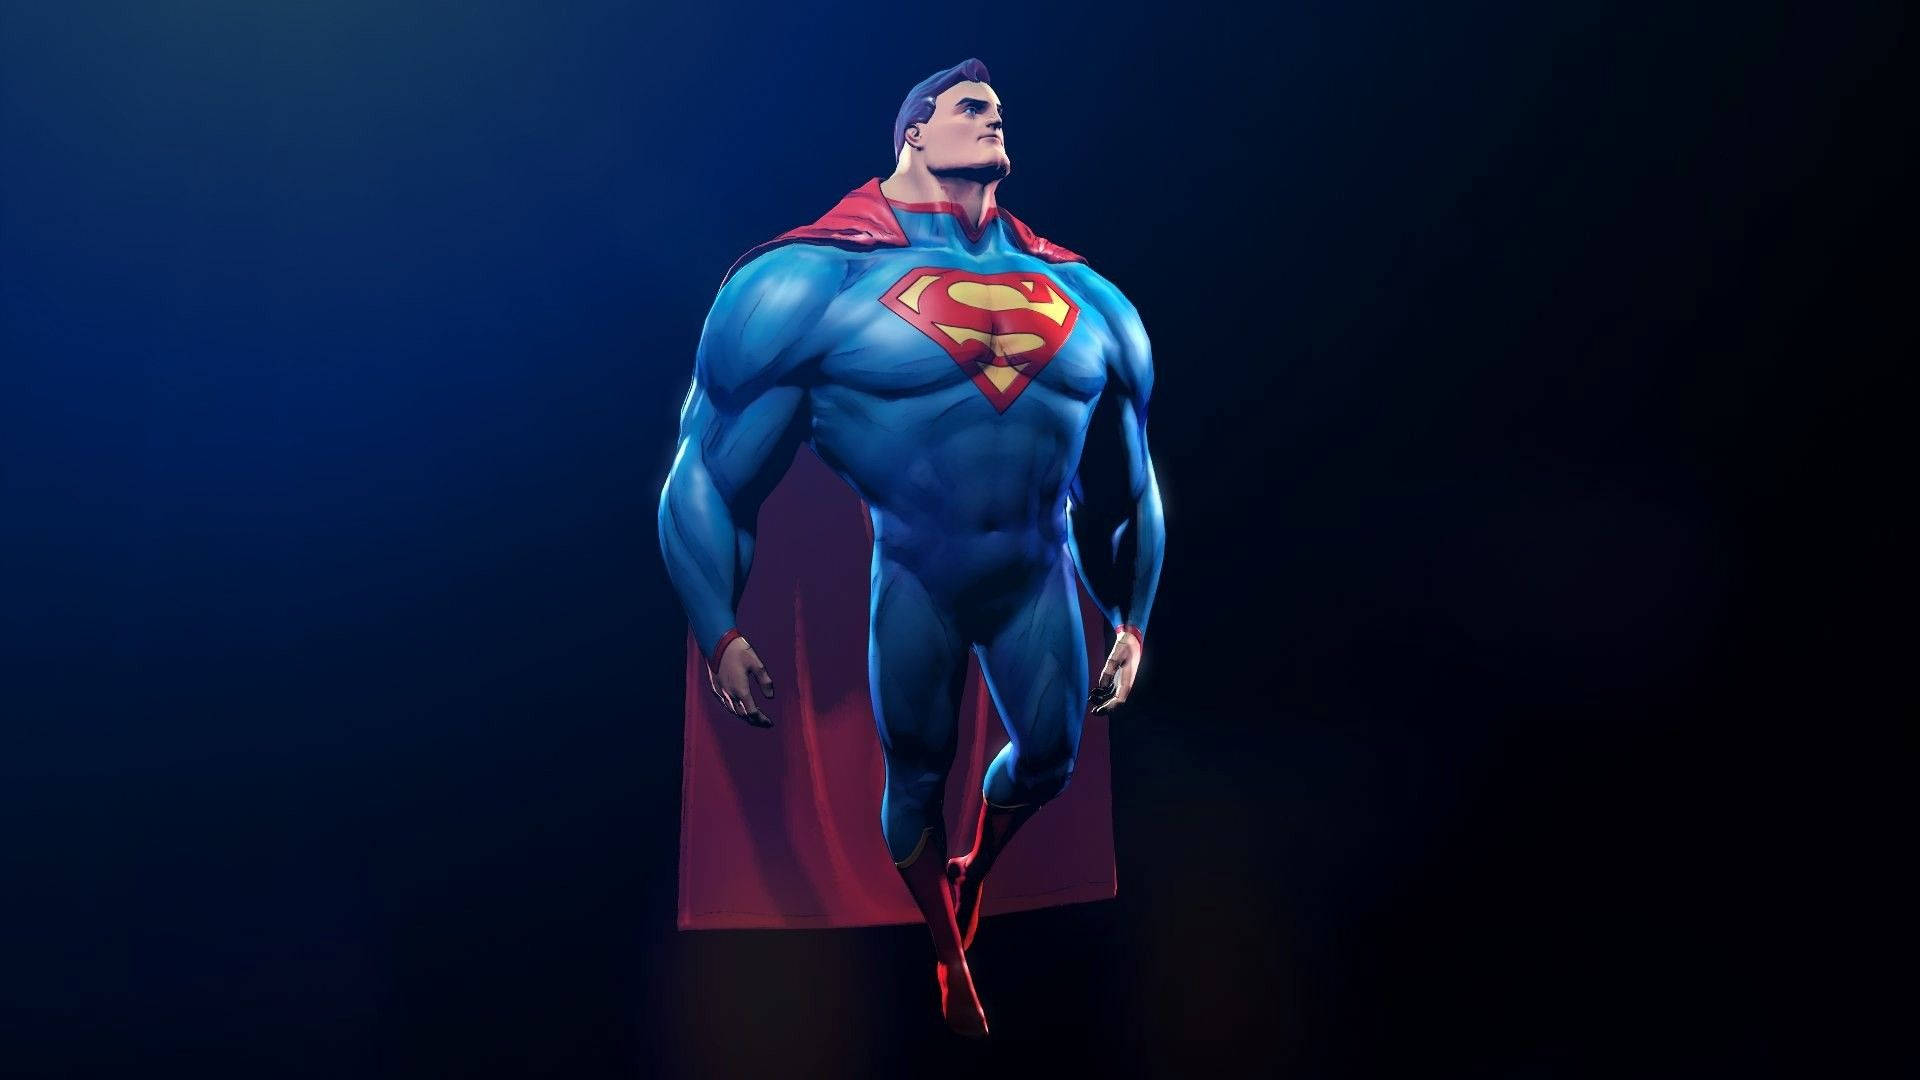 Download Superman Hd Wallpaper 1080p Wallpaper 